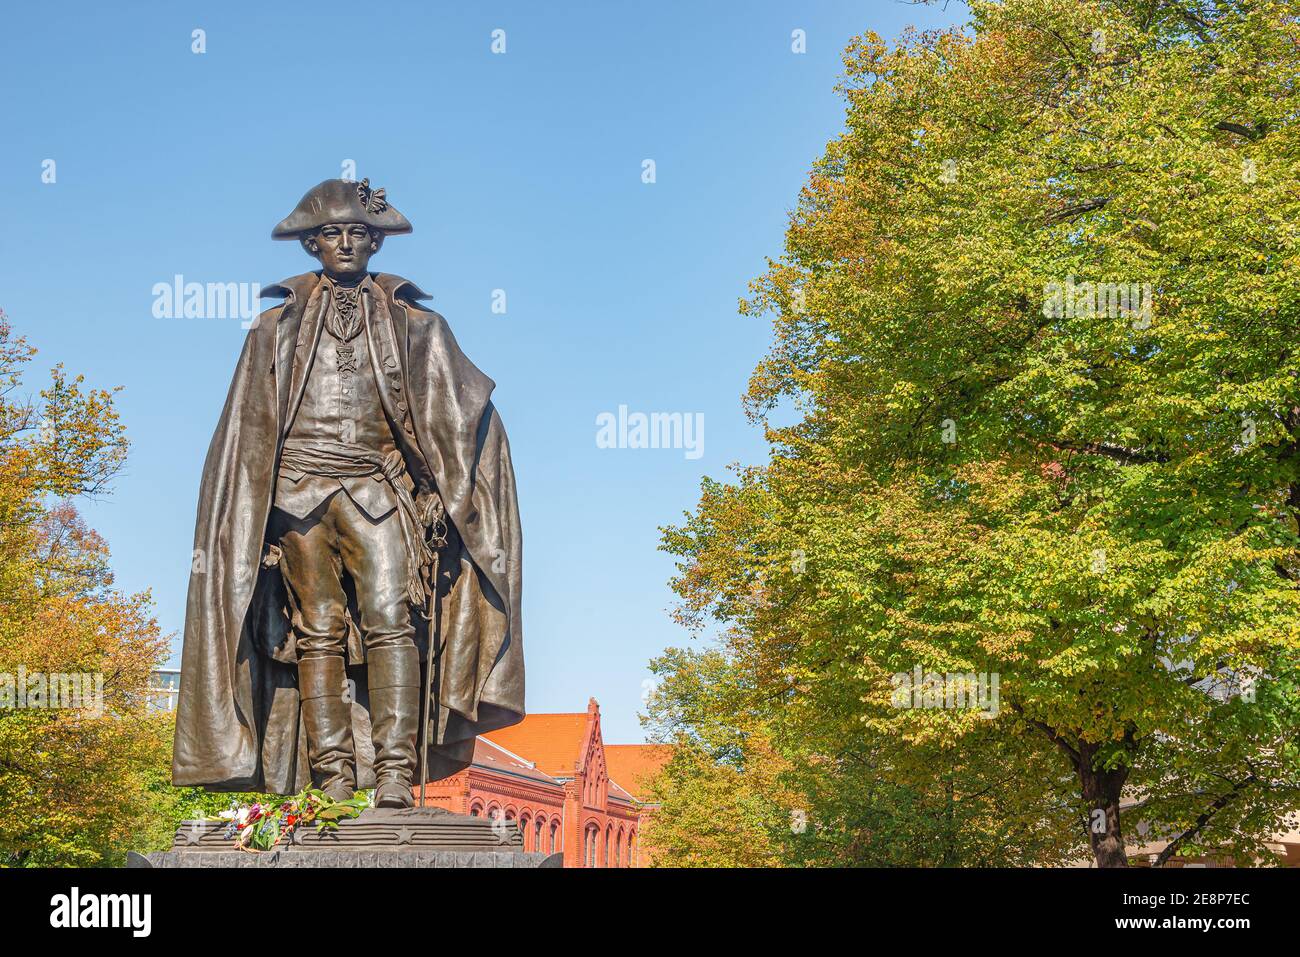 Monument du général américain Baron von Steuben dans le centre-ville historique de Magdeburg, Allemagne, aux couleurs de l'automne Banque D'Images